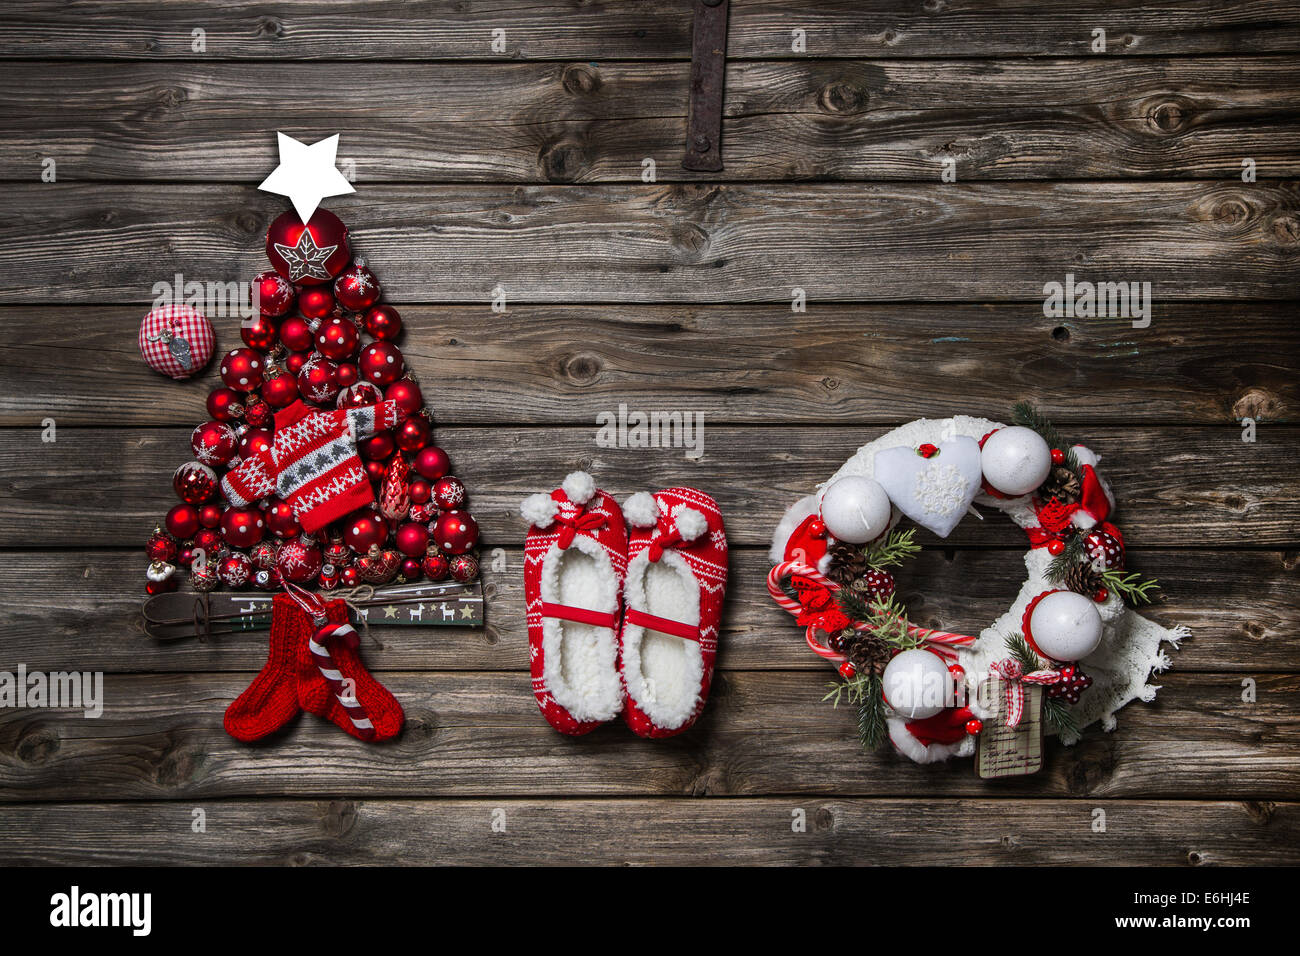 Noël Décoration de style : rouge, blanc, sur fond de bois. Banque D'Images